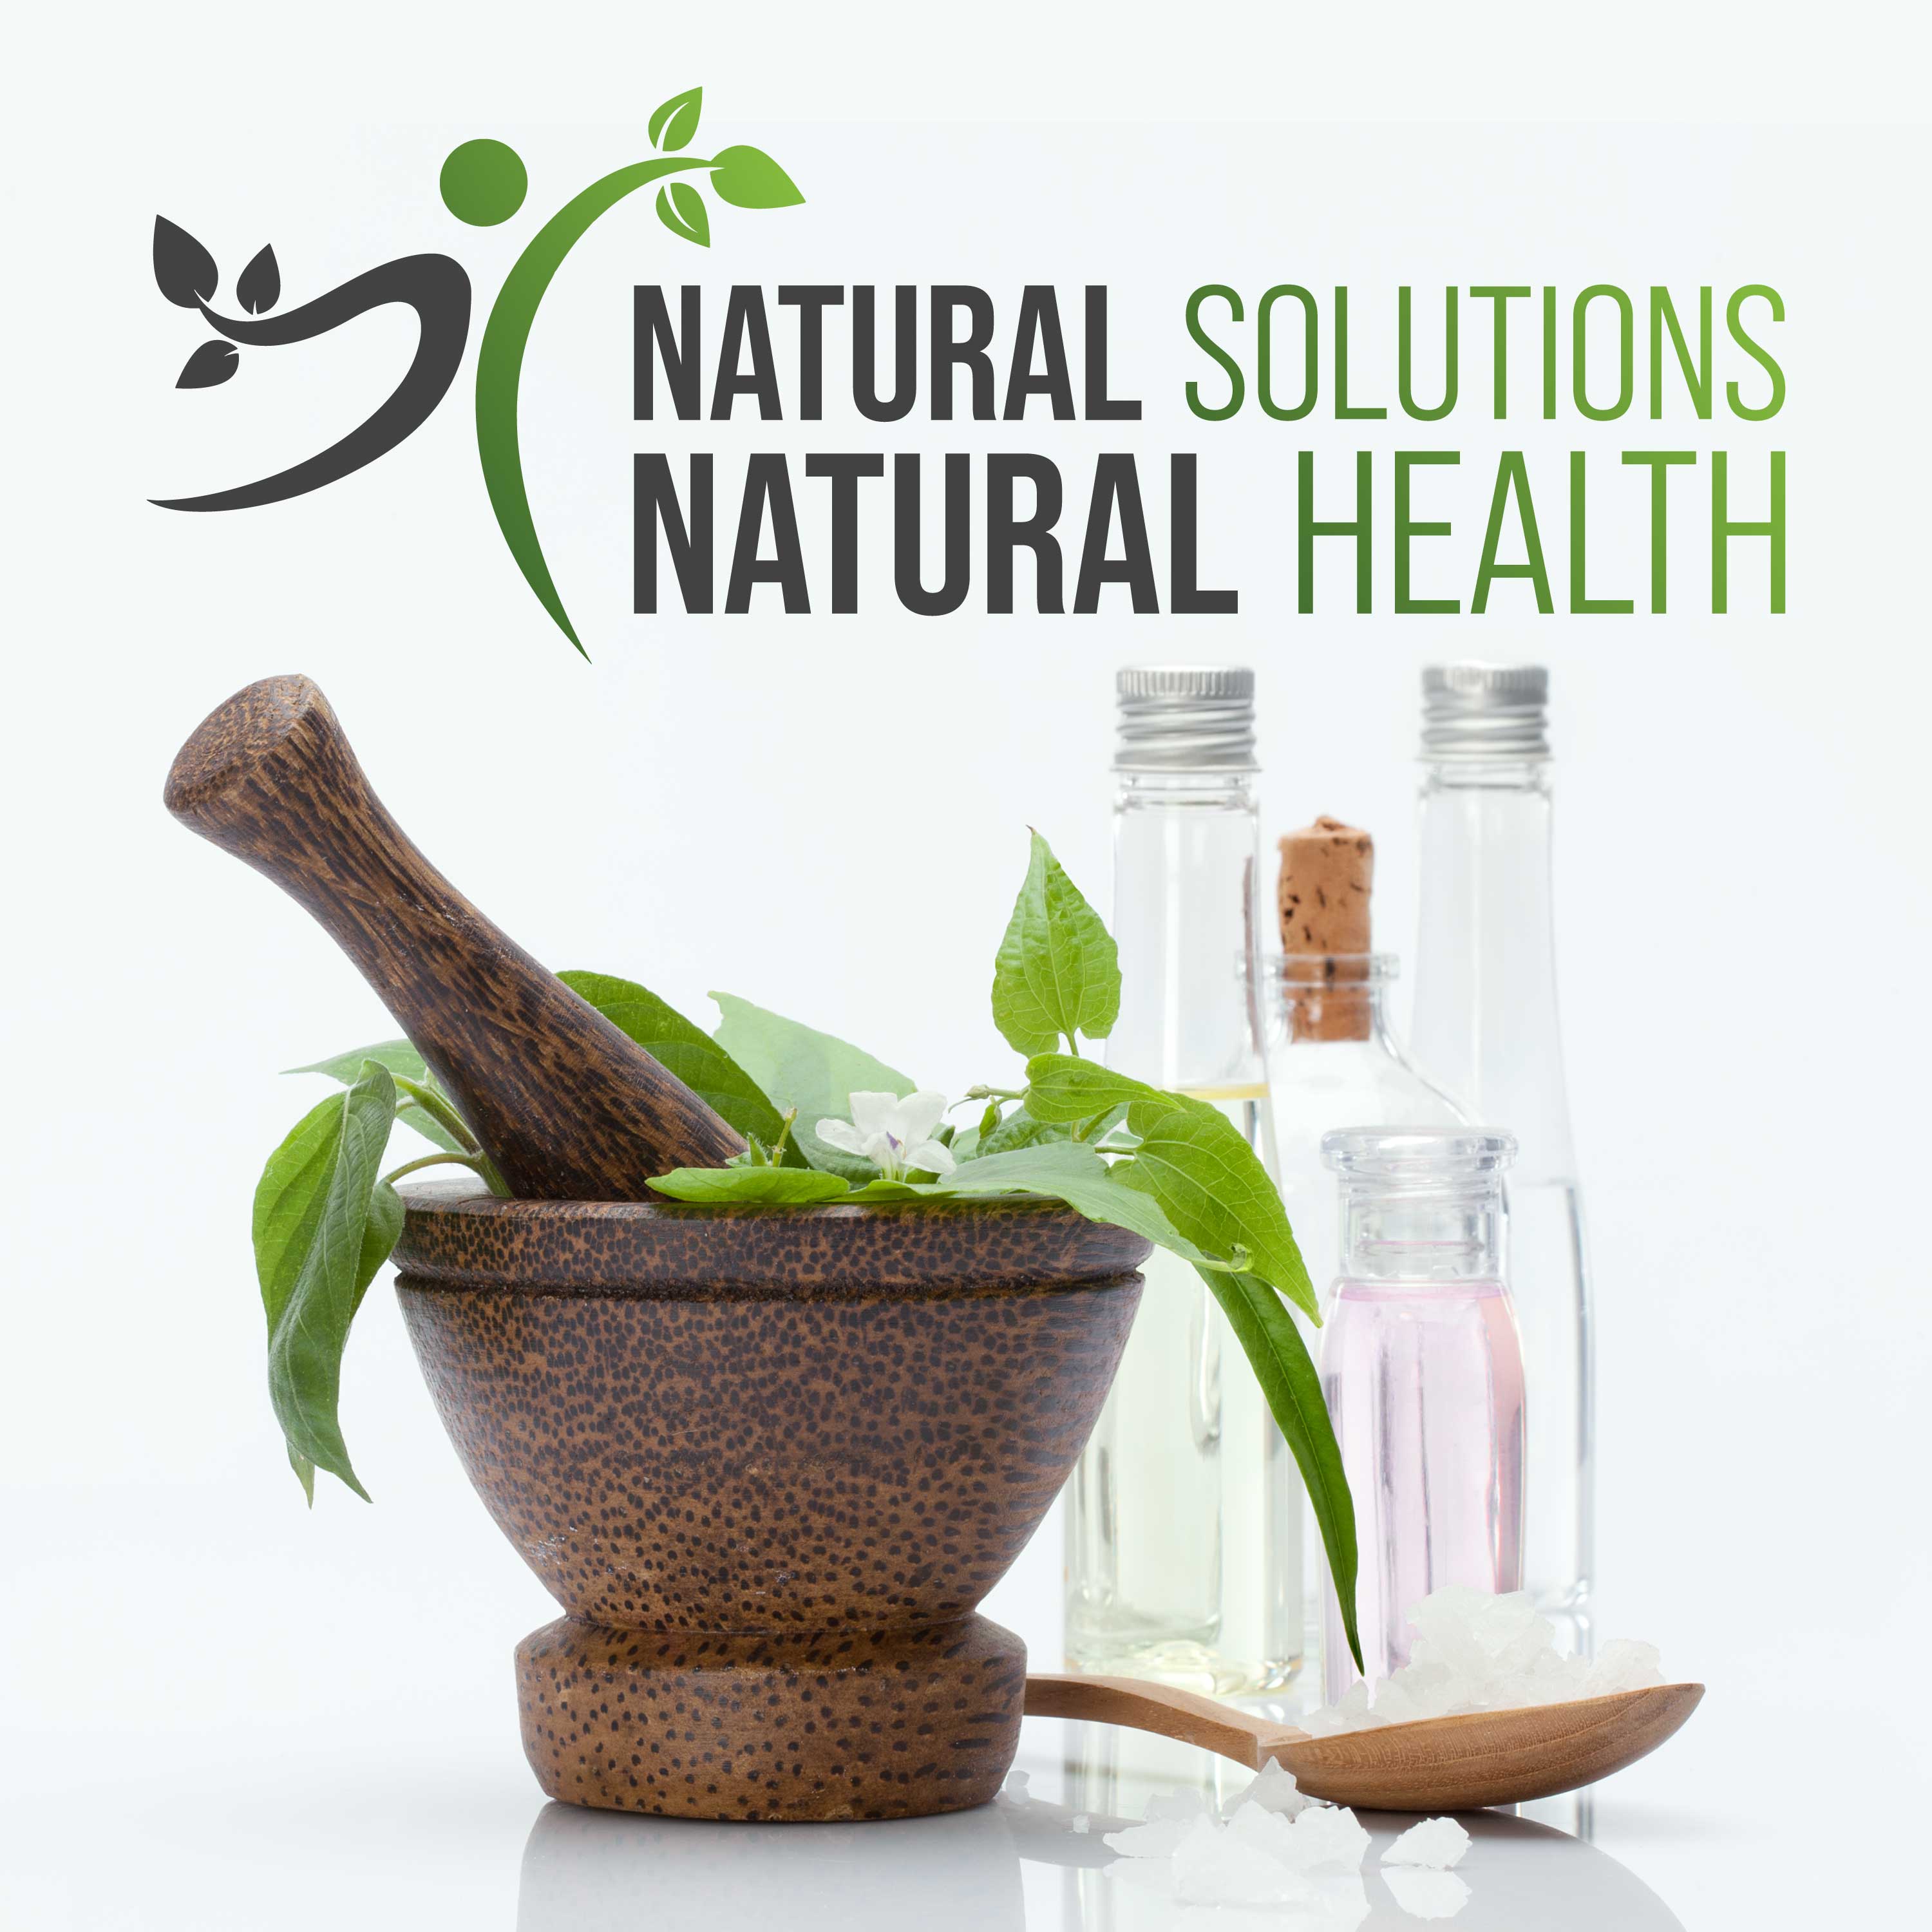 Natural Solutions Natural Health